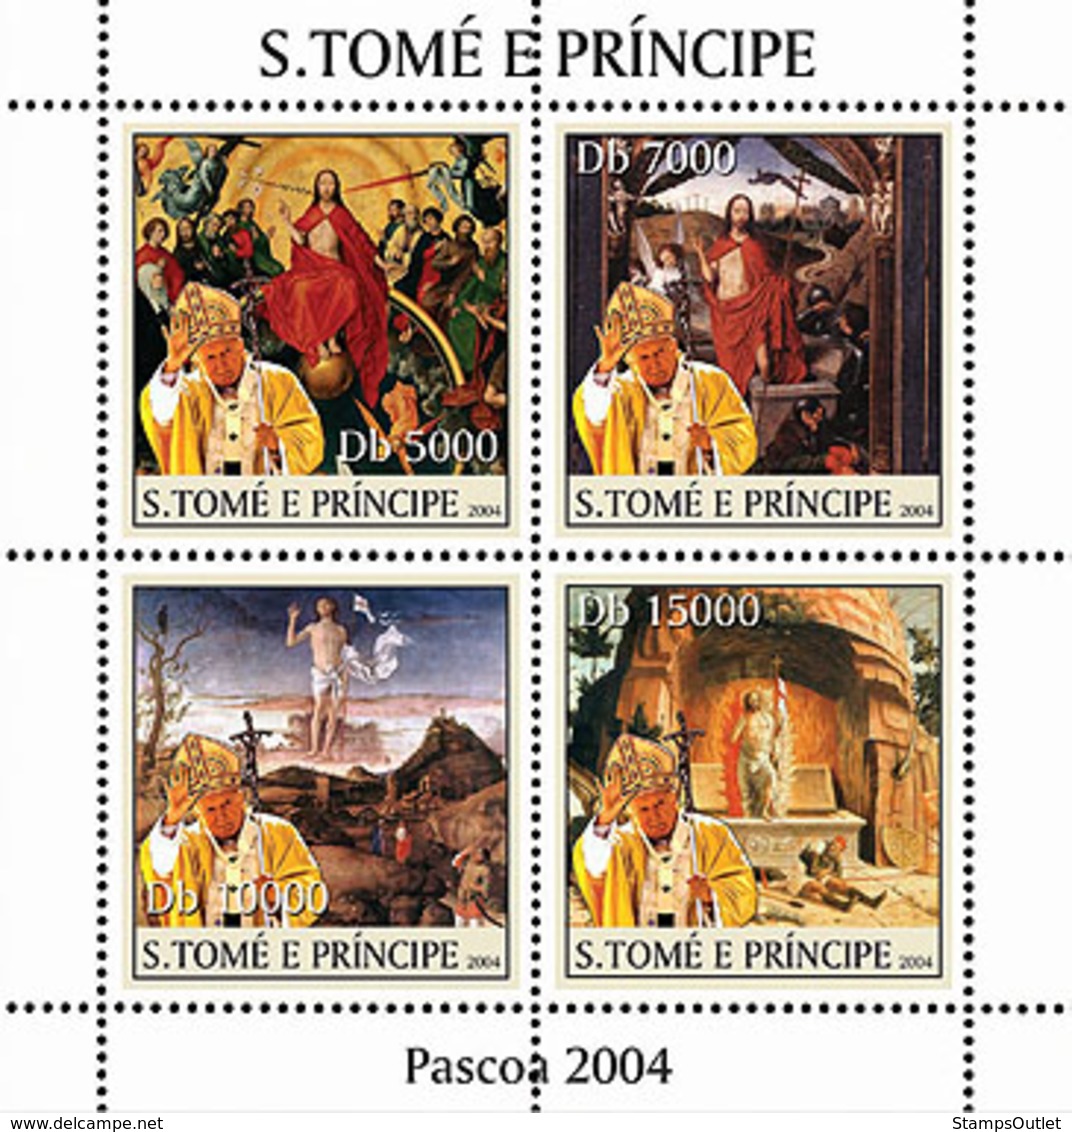 S. TOME & PRINCIPE 2004 - Paintings & Pope 4v - YT1926-1929,  Mi 2663-2666 - São Tomé Und Príncipe